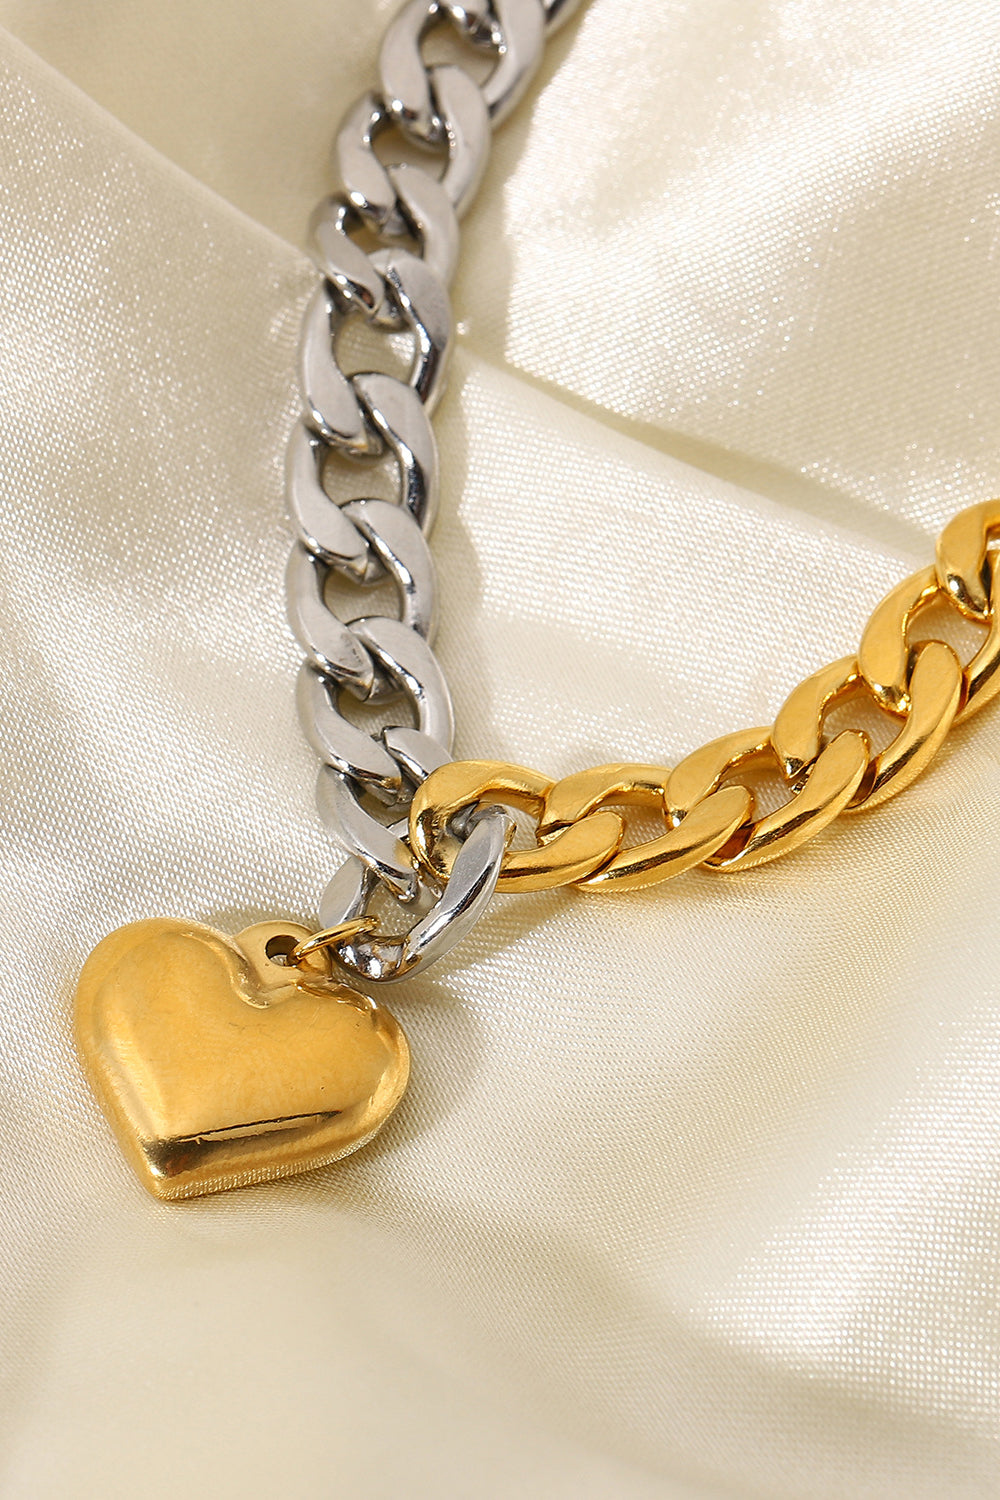 Chain Heart Charm Bracelet - Multicolored / One Size - Women’s Jewelry - Bracelets - 4 - 2024